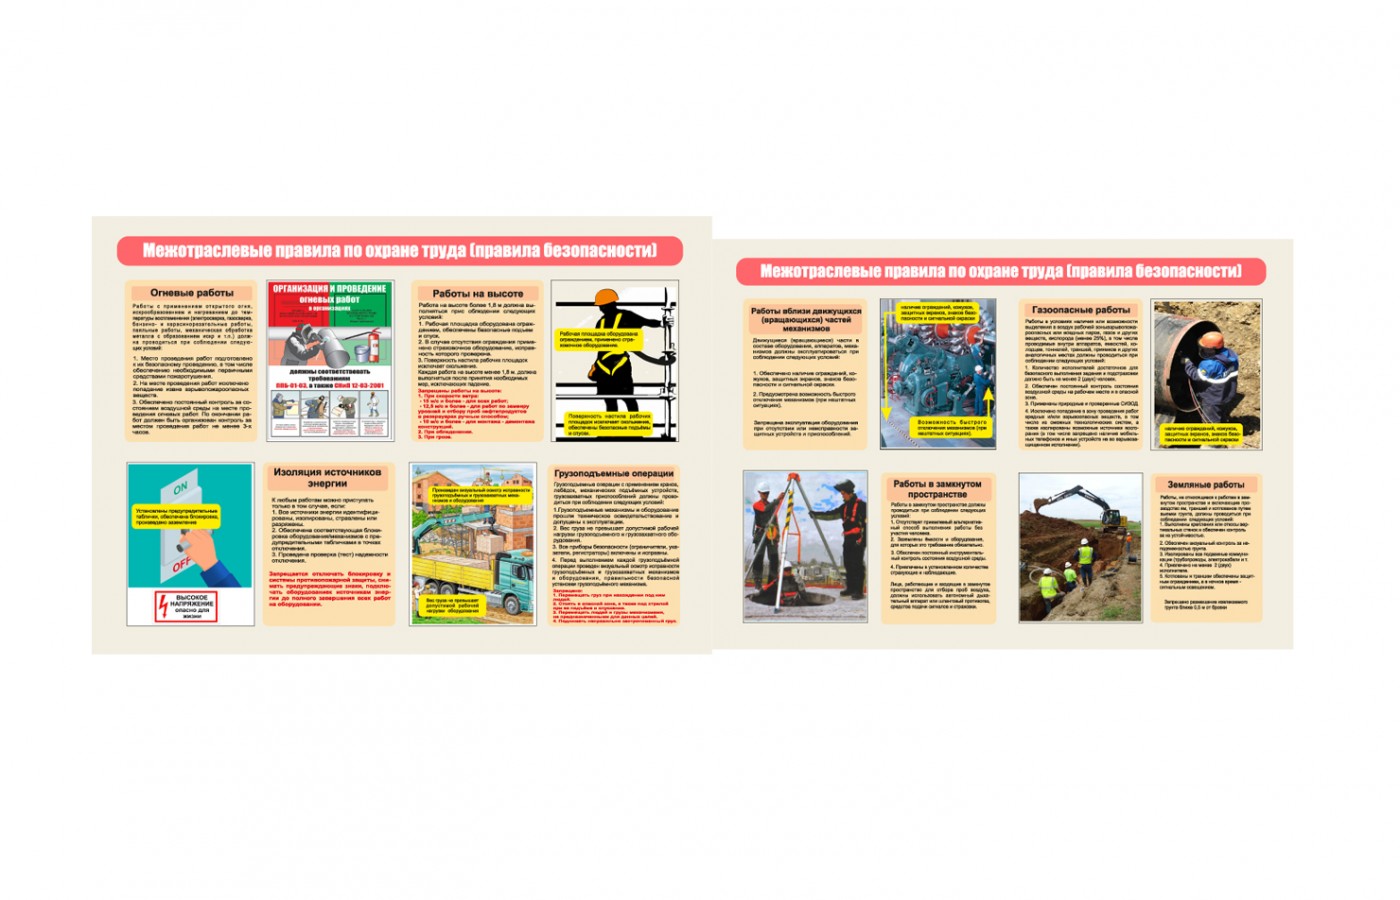 Комплект плакатов "Межотраслевые правила по охране труда (правила безопасности"